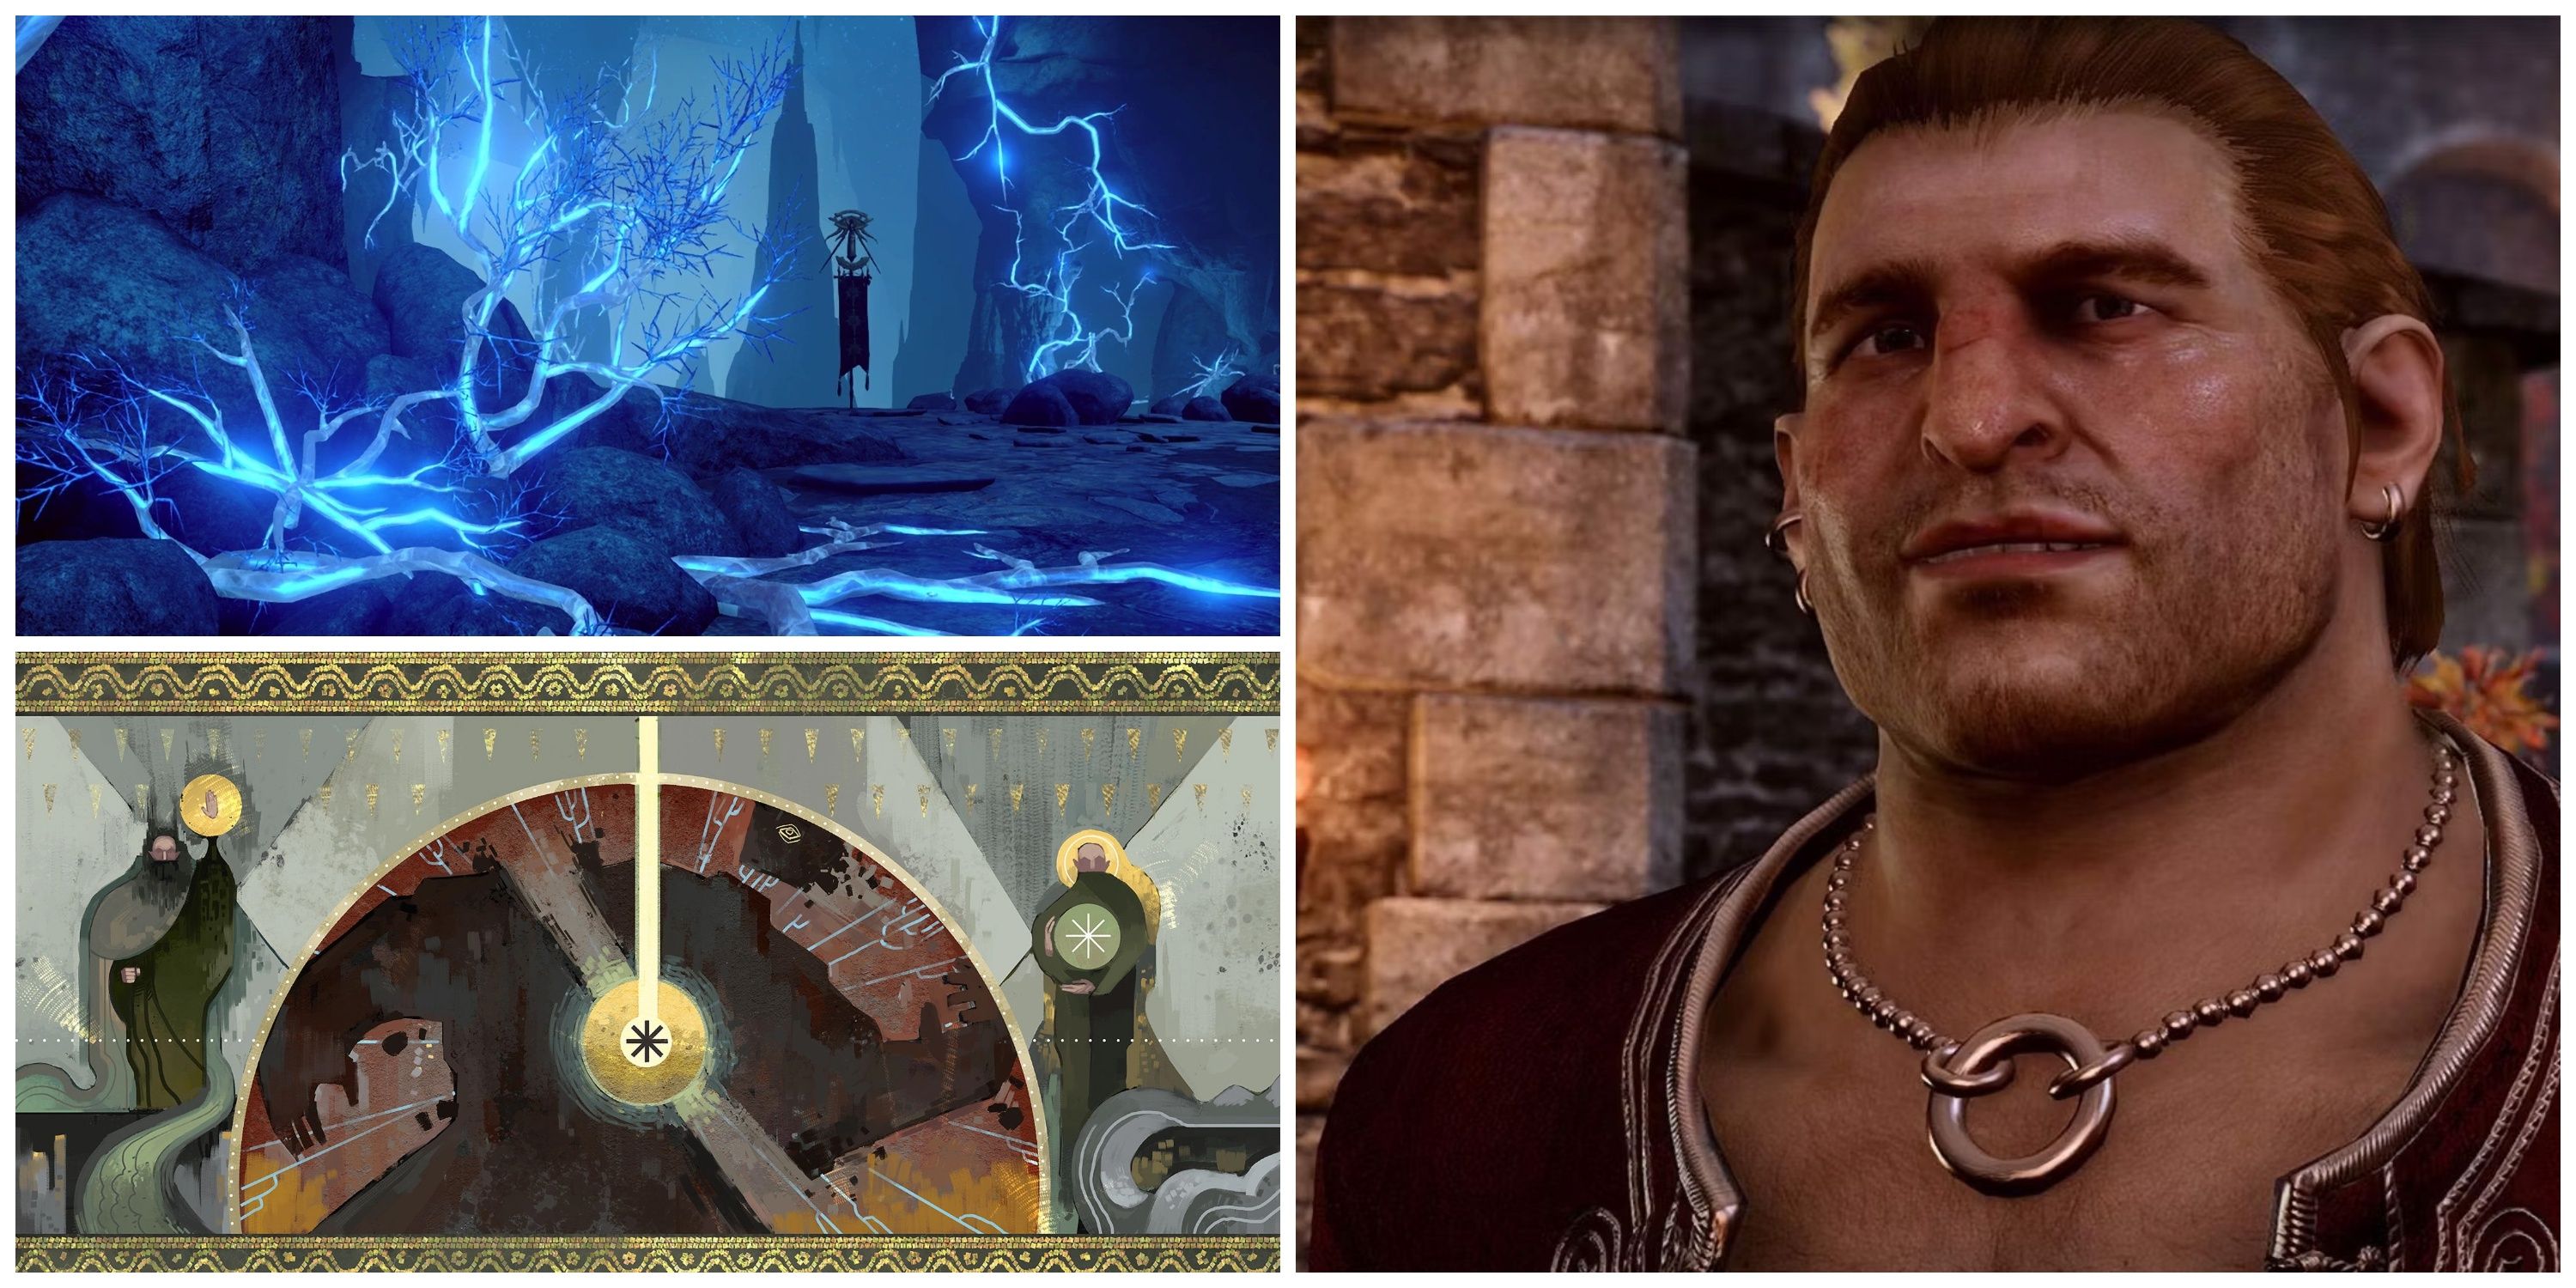 Dragon Age Dwarf Comeback collage featuring a dwarf